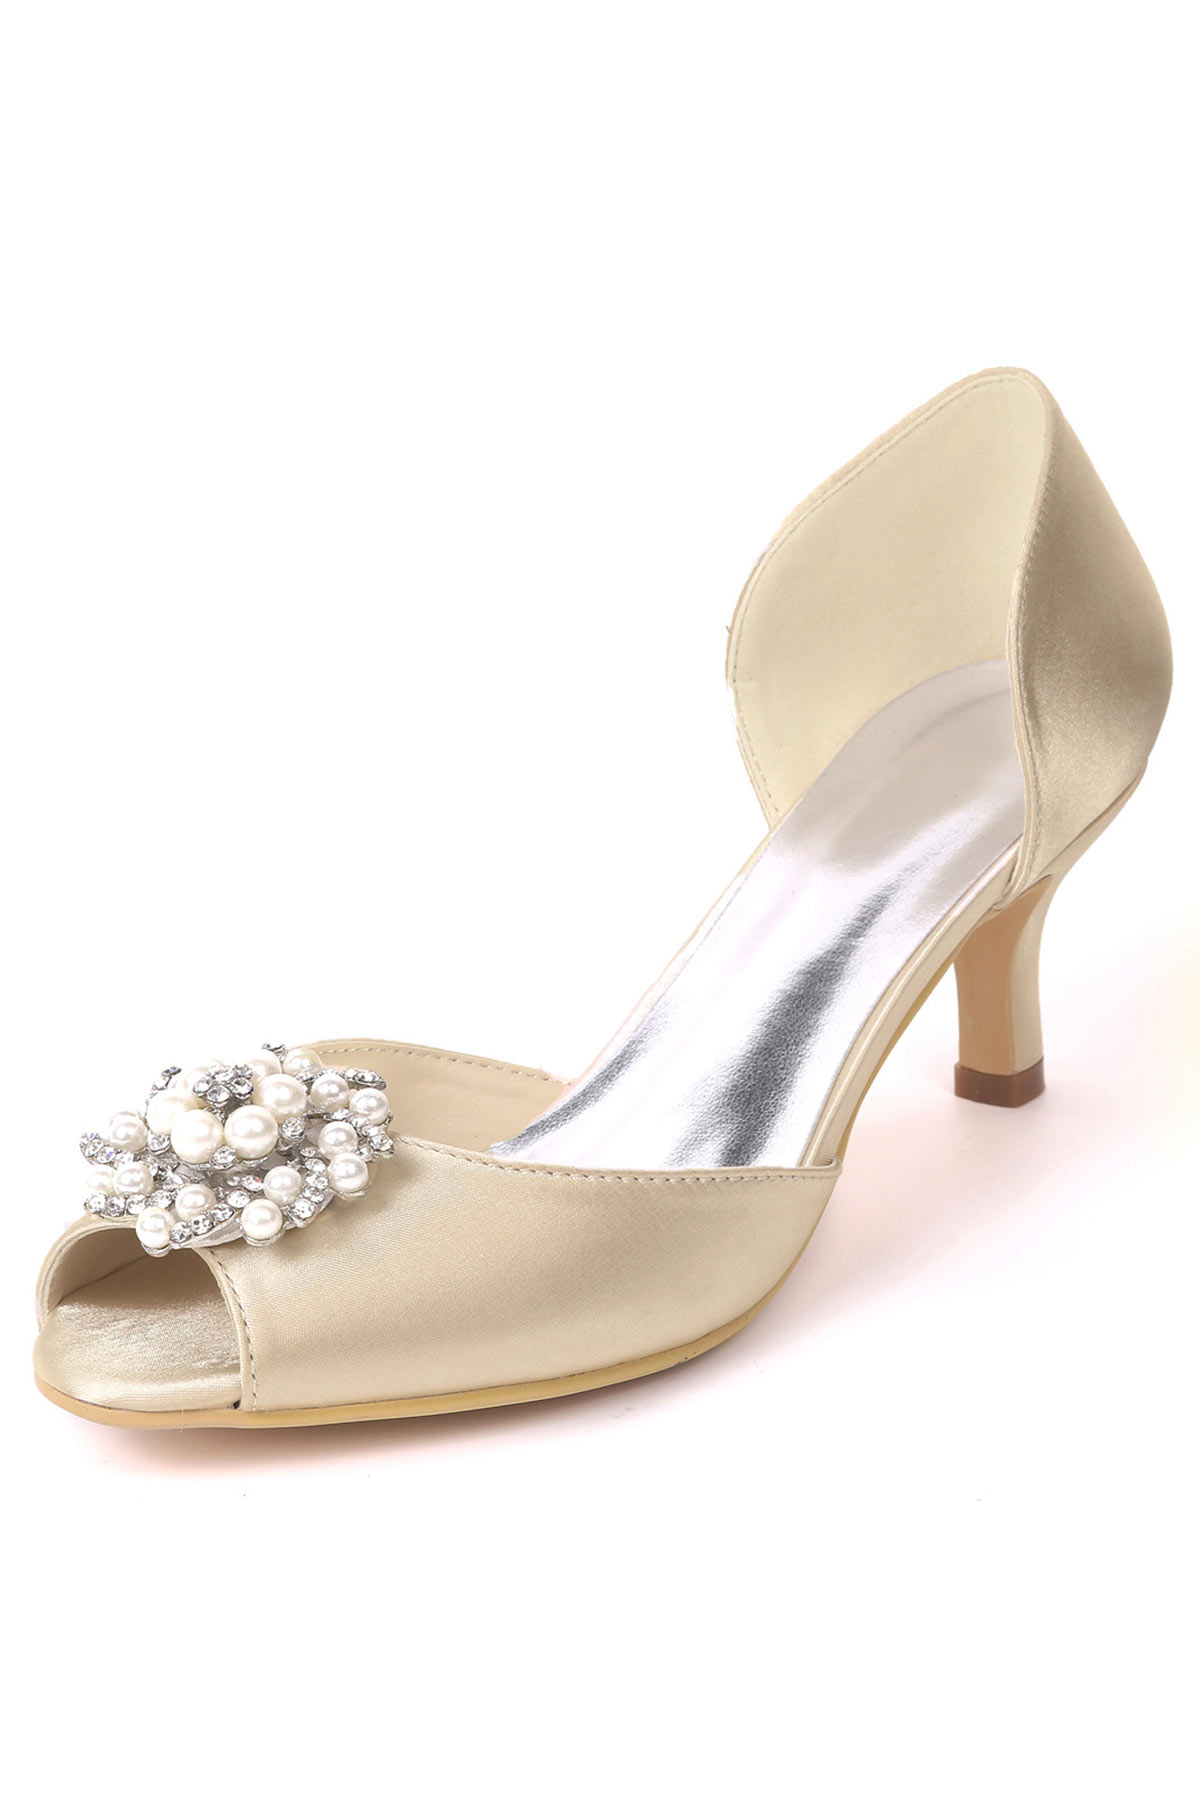 Chaussures ivoire pour mariée à petit talon bout ouvert perlé